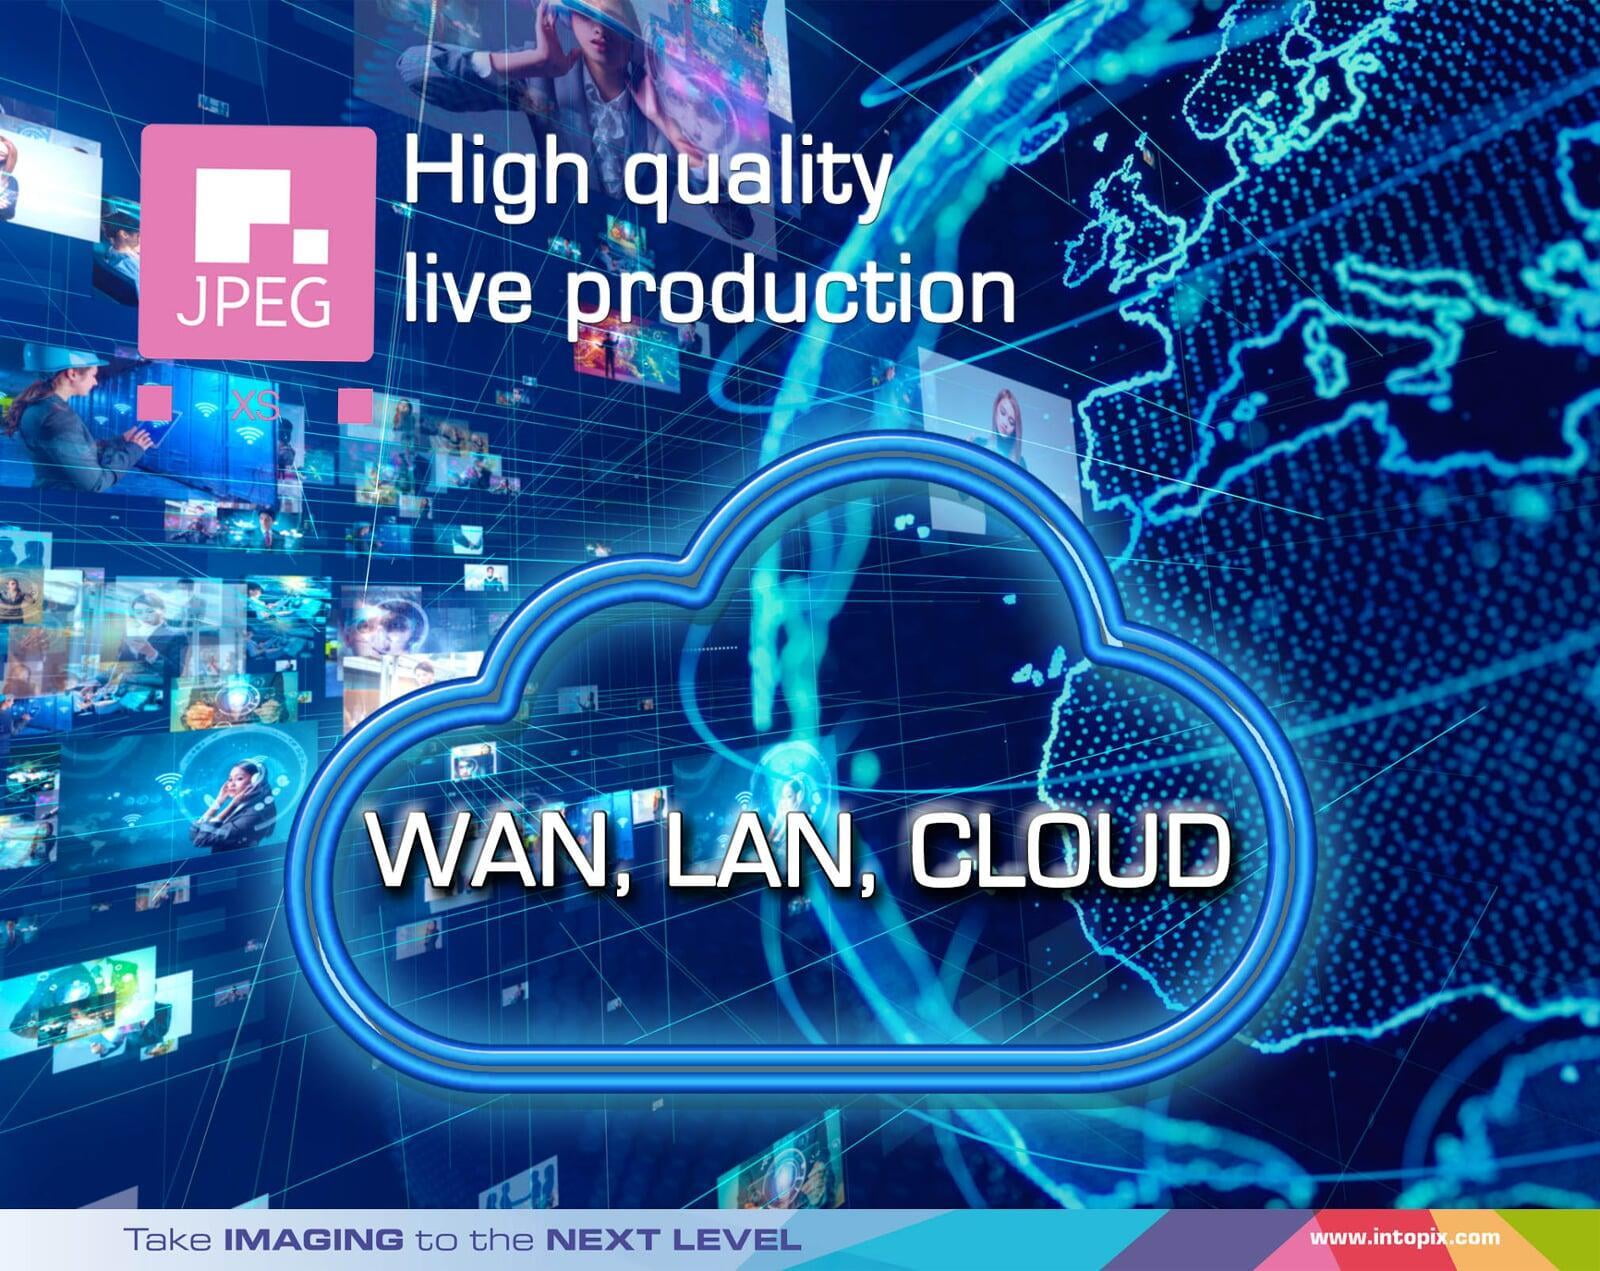 JPEG XSを使用して、LAN, WAN, CLOUDでの高品質ライブ制作